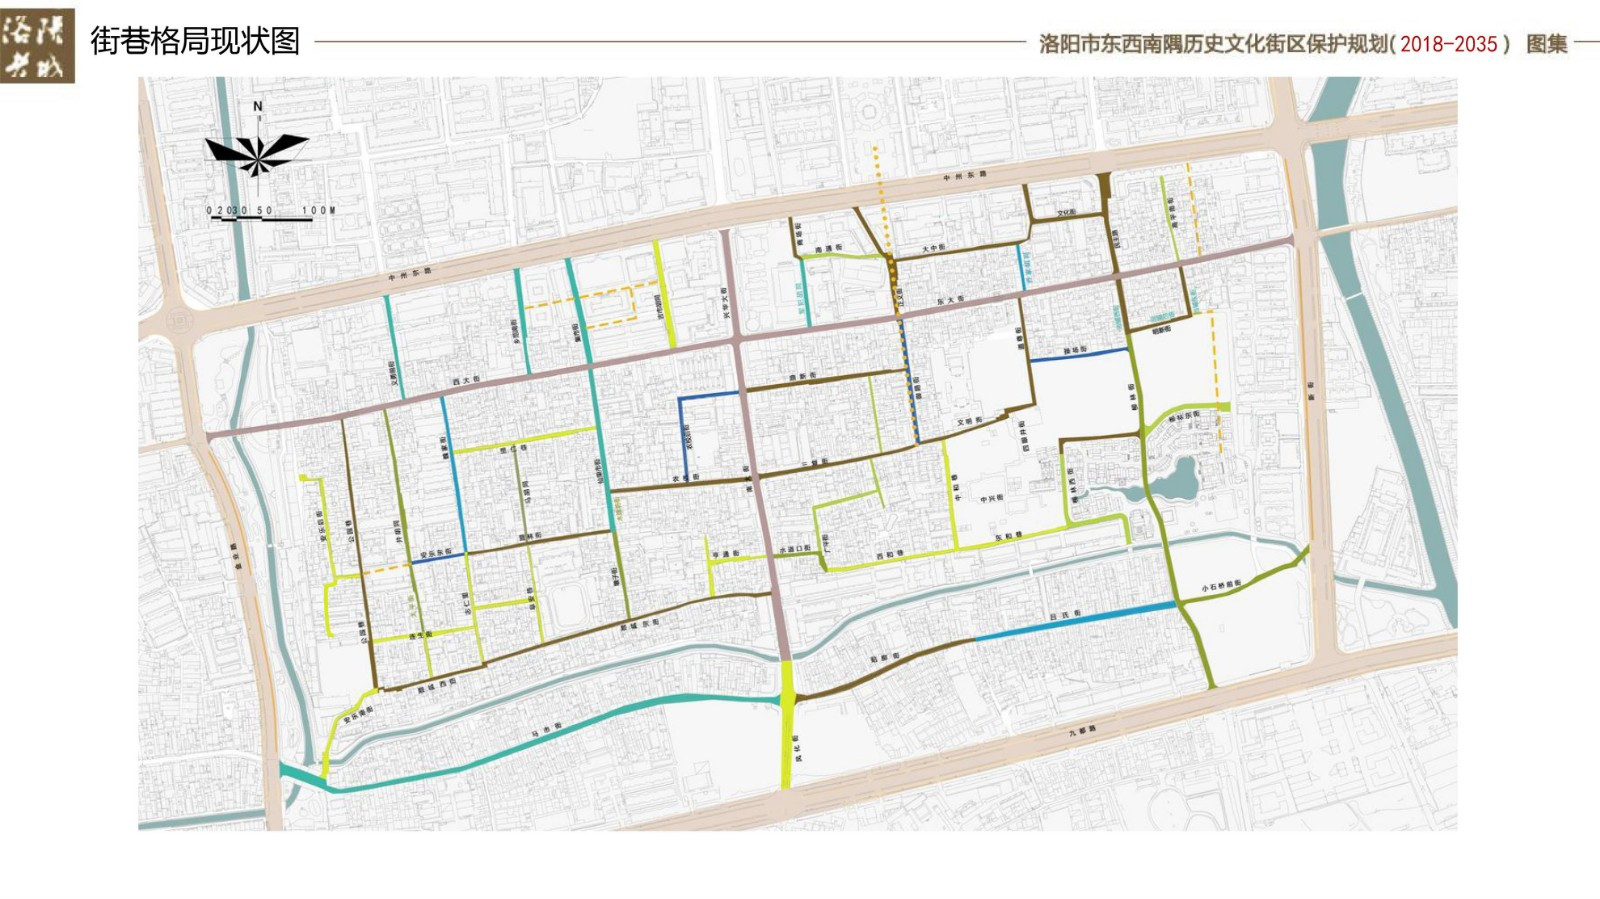 洛阳东西南隅历史文化街区（老城片区）保护规划（2018-2035）》公示